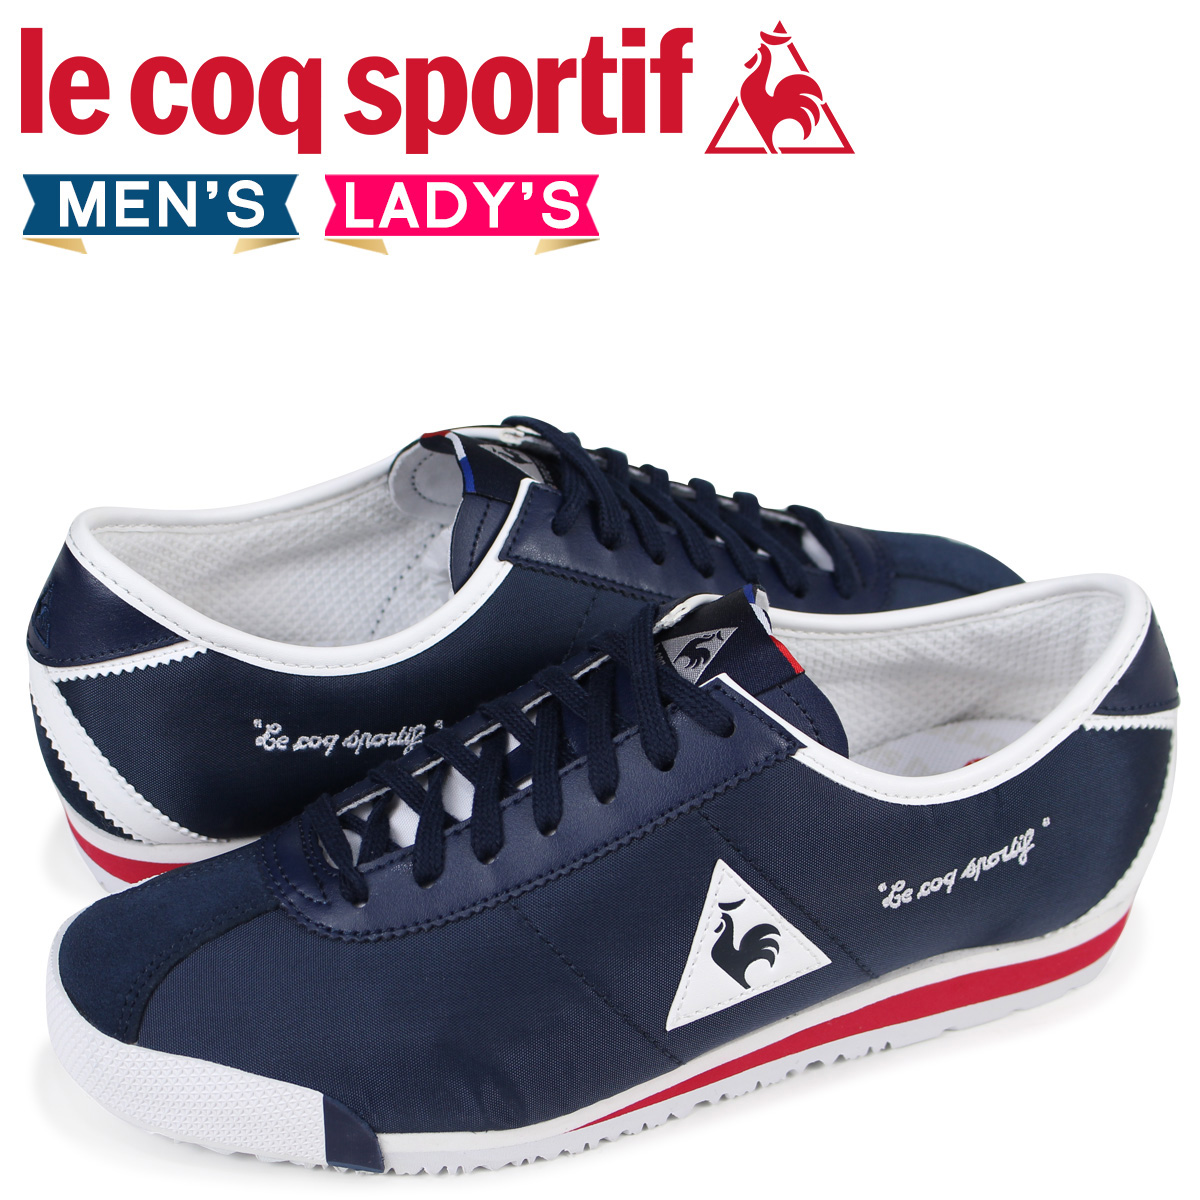 le coq sportif shoes Sale,up to 74 